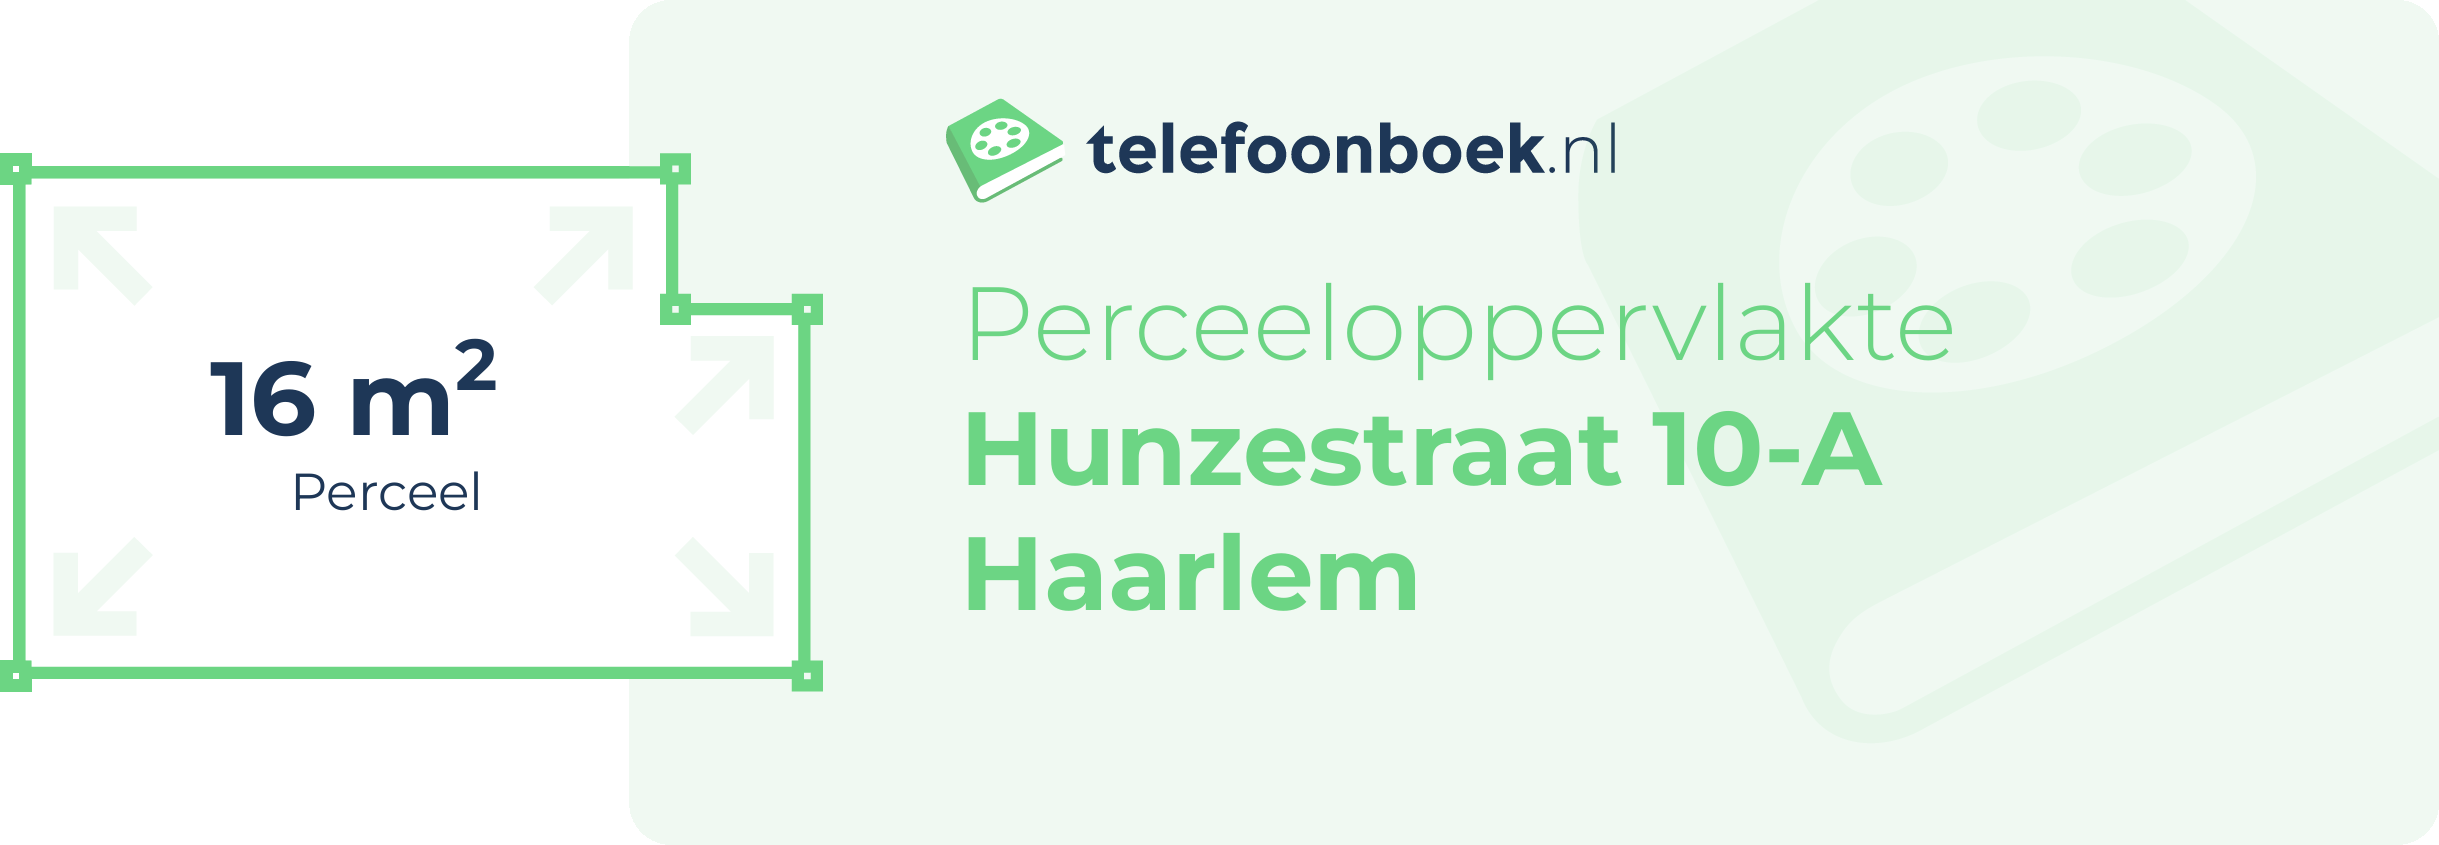 Perceeloppervlakte Hunzestraat 10-A Haarlem